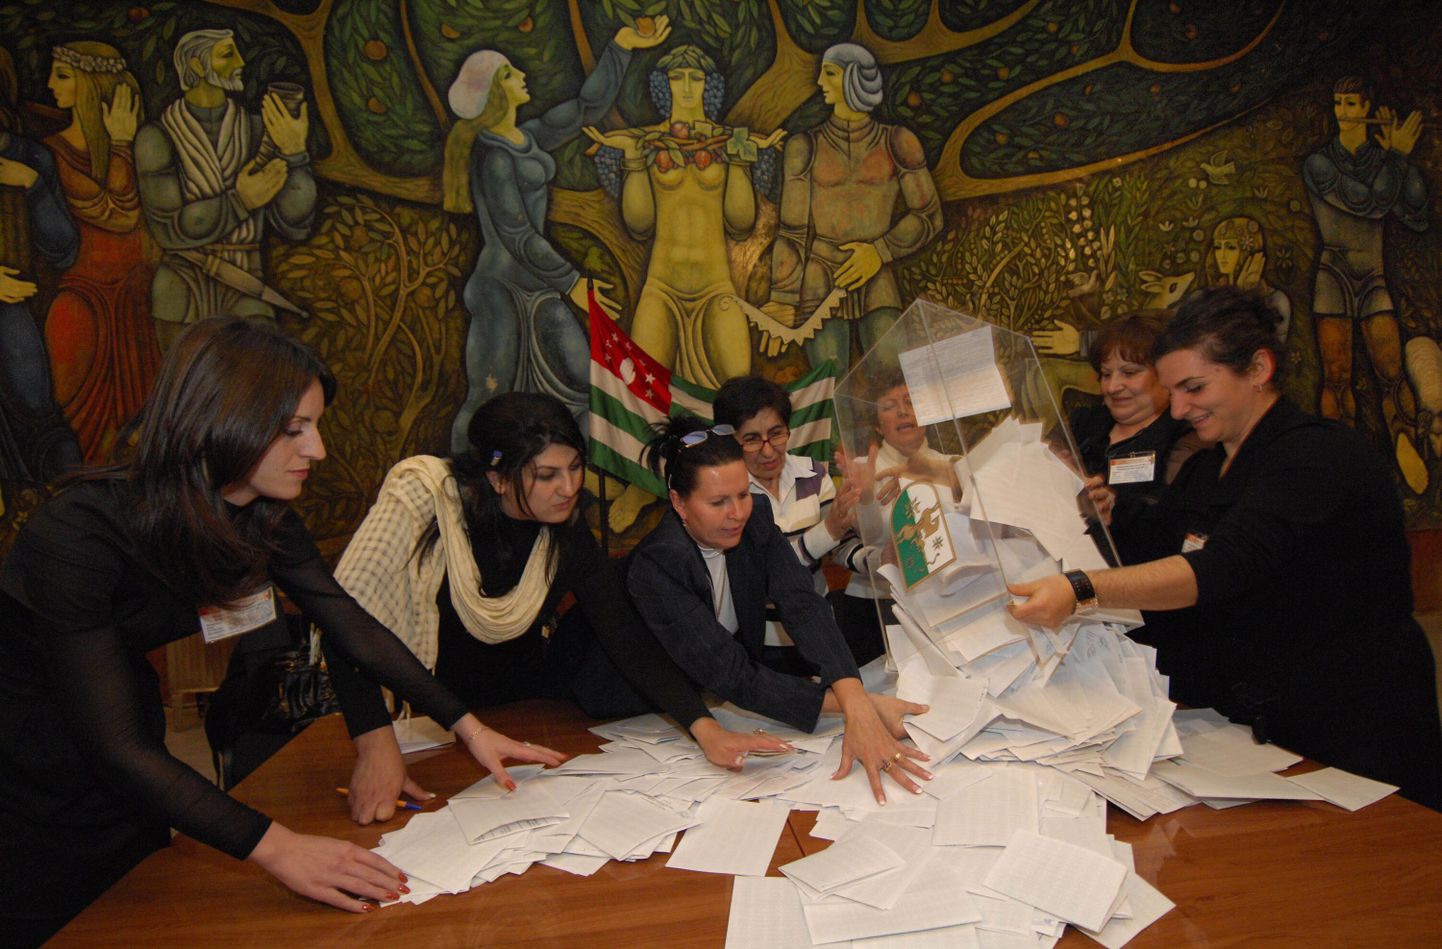 Valmisjaoskonna töötajad tühjendavad hääletussedelite kasti Suhhuumis.